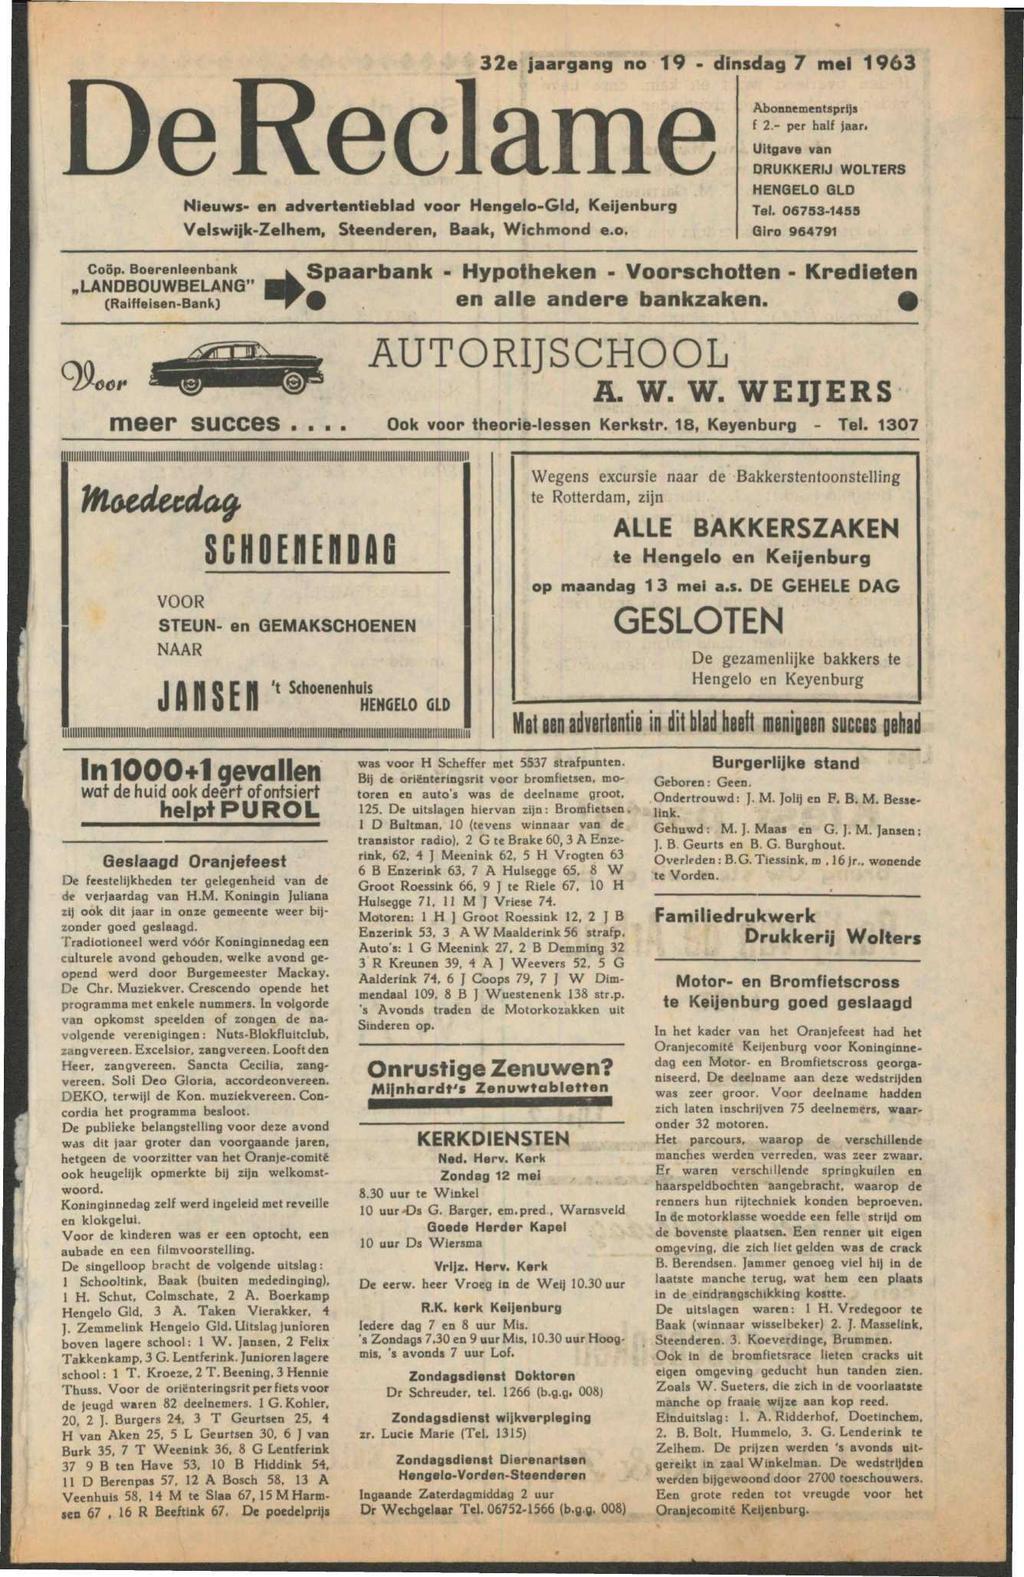 32e jaargang no 19 - dinsdag 7 mei 1963 Nieuws- en advertentieblad voor Hengelo-Gld, Keijenburg Velswijk-Zelhem, Steenderen, Baak, Wichmond e.o. Abonnementsprijs f 2.